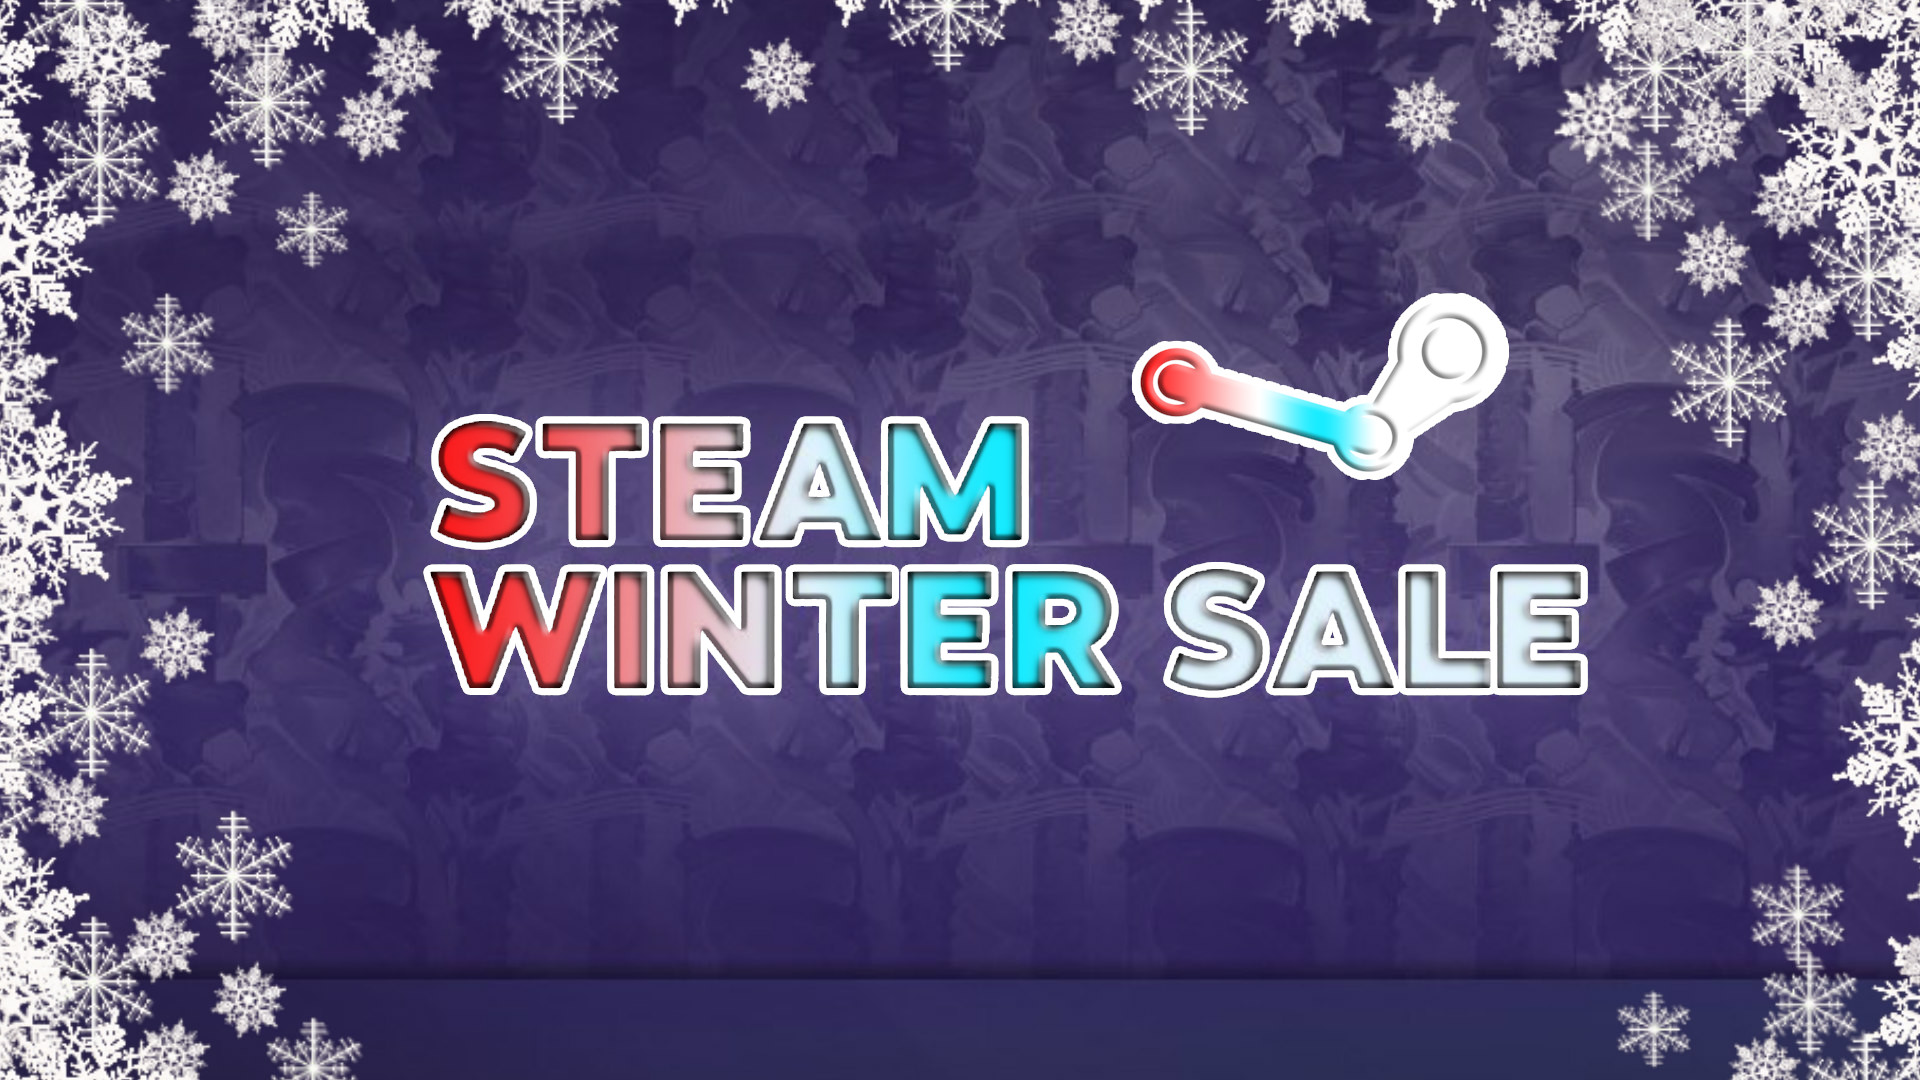 ไม่ง้อจ่าพิชิต! หลุดวันลดราคาเกมบน Steam ในช่วงเทศกาล Winter Sale